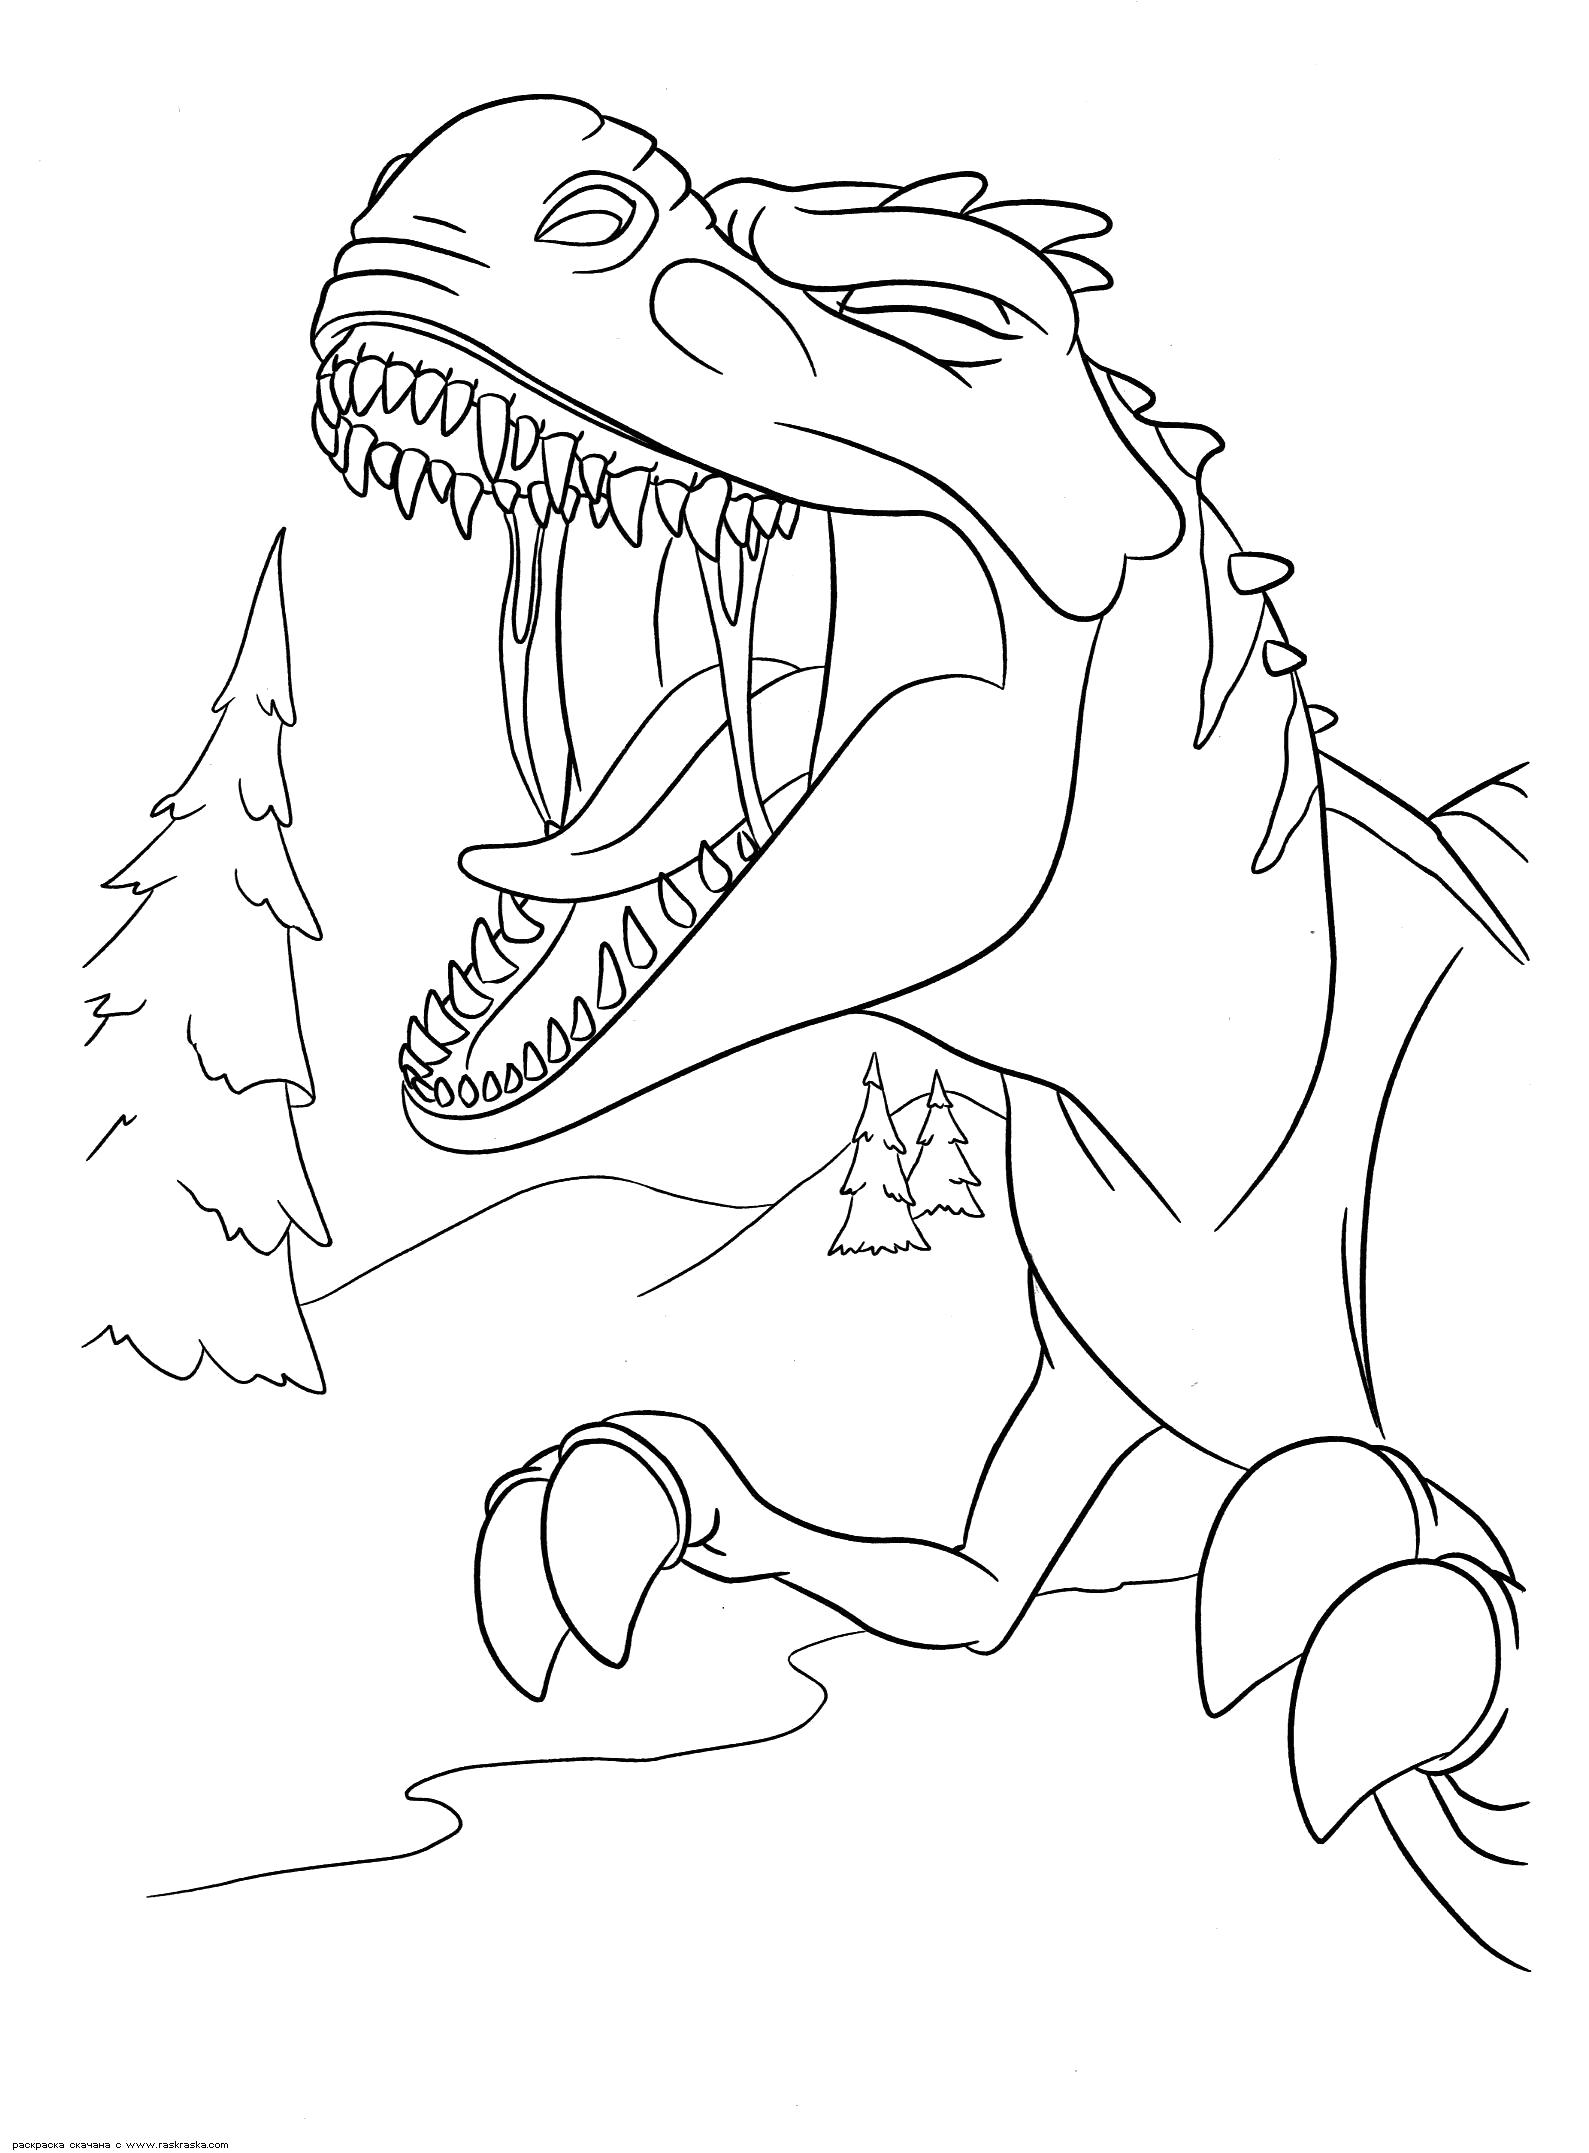 Раскраска  Громкий рёв мамаши.   динозавра из мультика Ледниковый период 3: Эра динозавров. Разукрашка скачать бесплатно. Скачать динозавр.  Распечатать динозавр